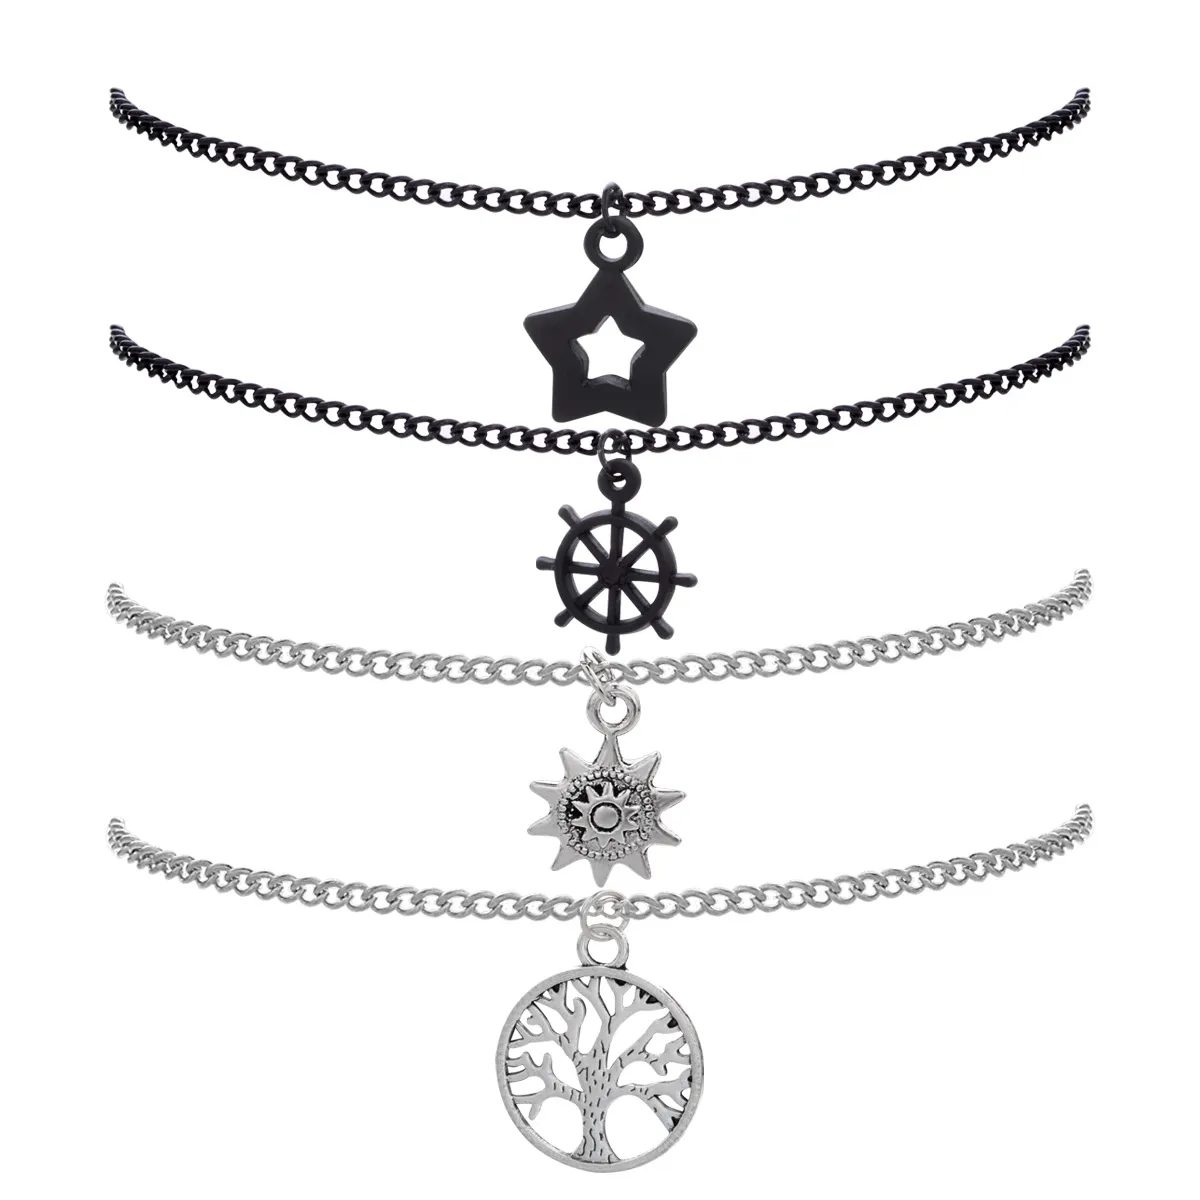 Neues trendiges Herrenmode-Armband mit Sternsträngen, Lebensbaum, versilbert, schwarz plattiert, 4 Stück/Set